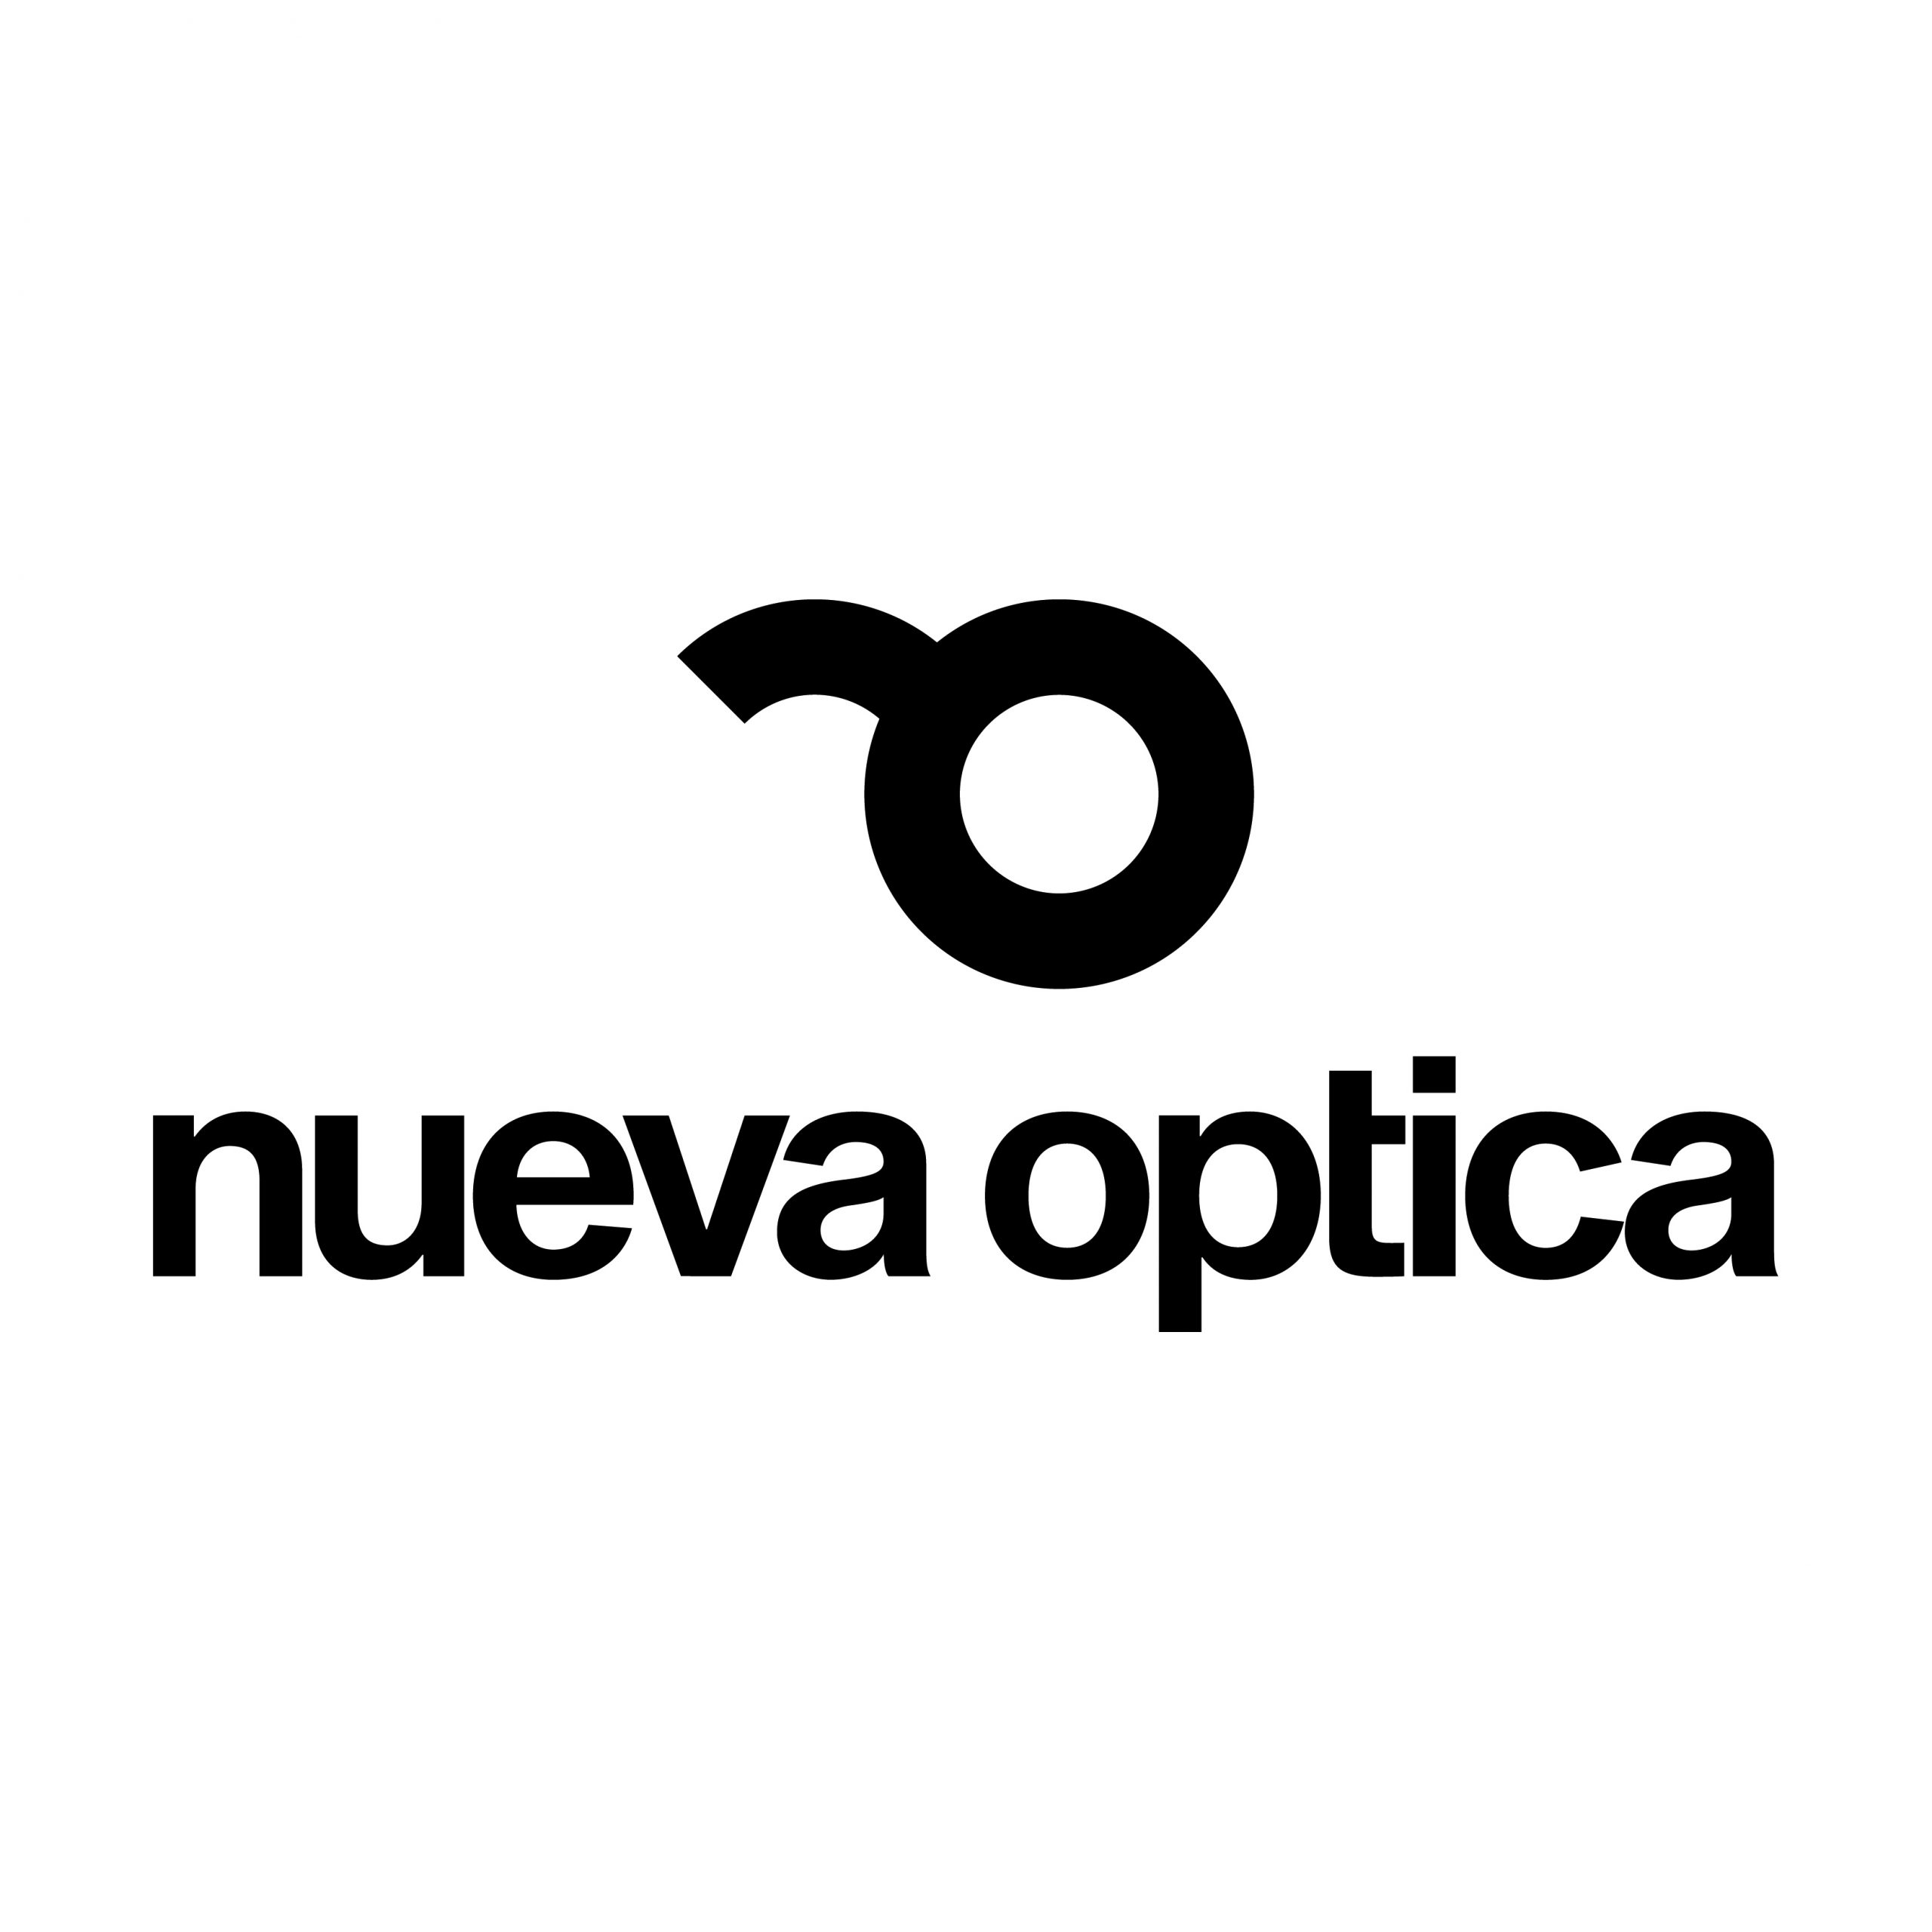 LOGO nueva optica scaled - Nueva Óptica